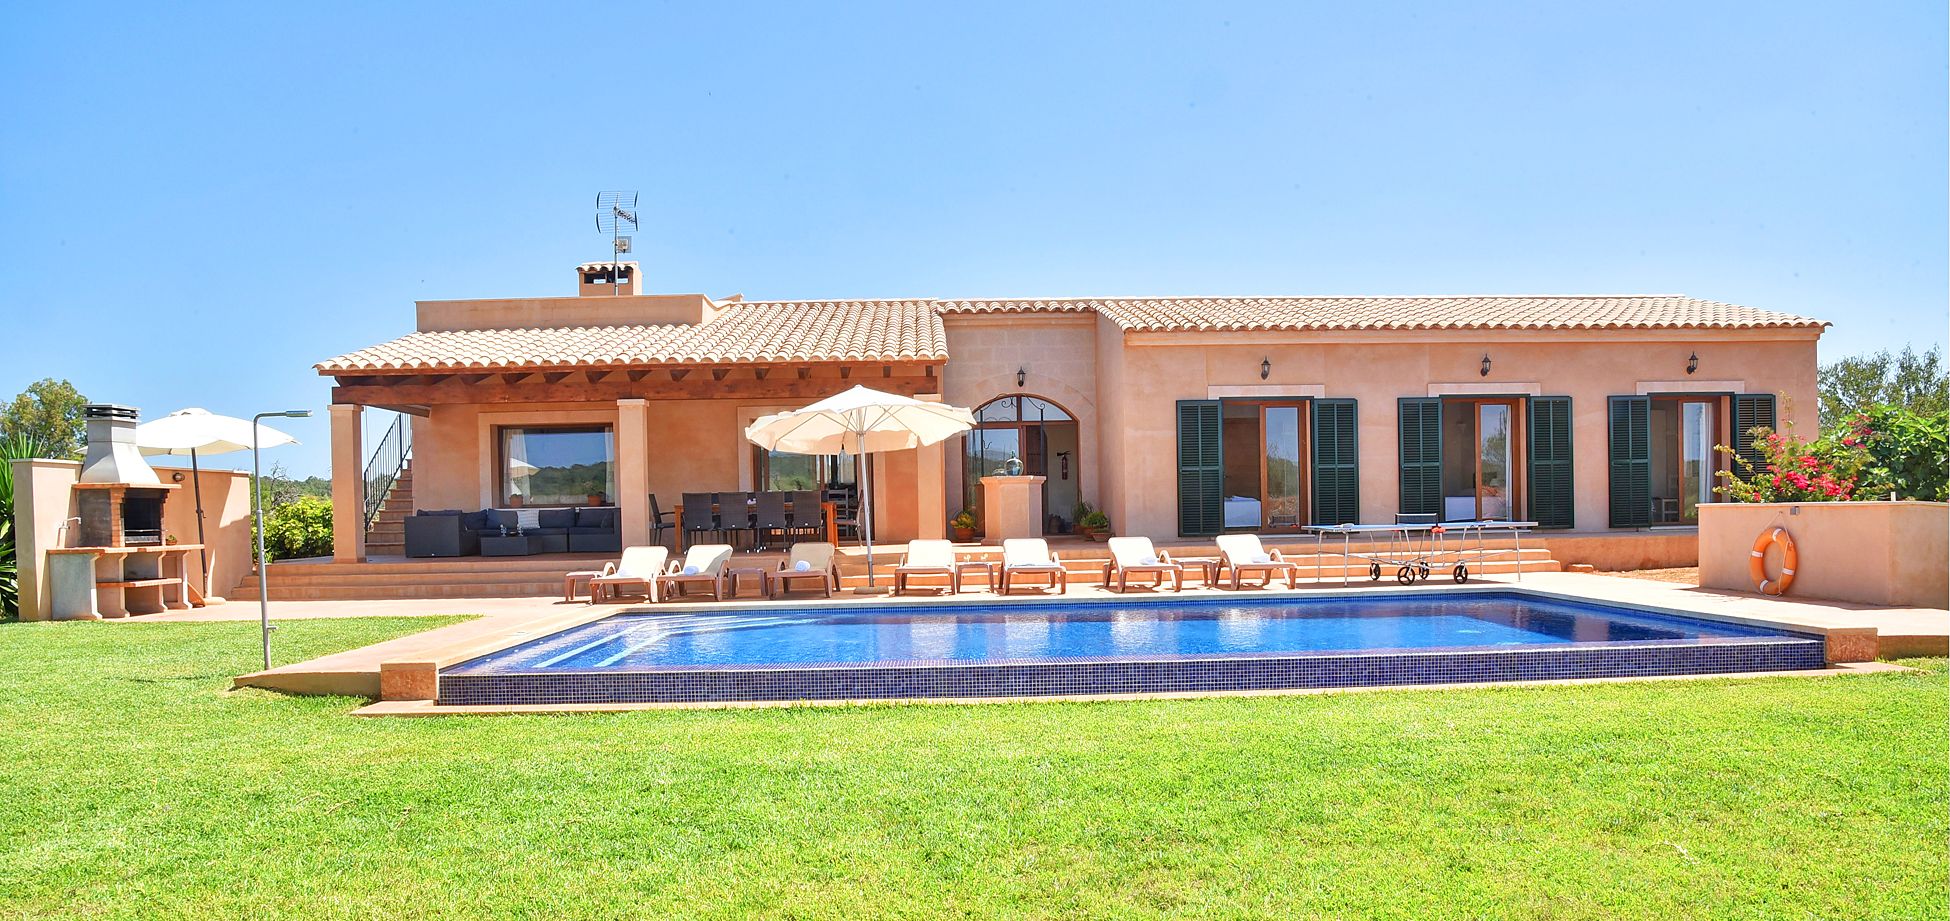 Ferienhaus Mallorca mit Pool für 8 Personen zu mieten.